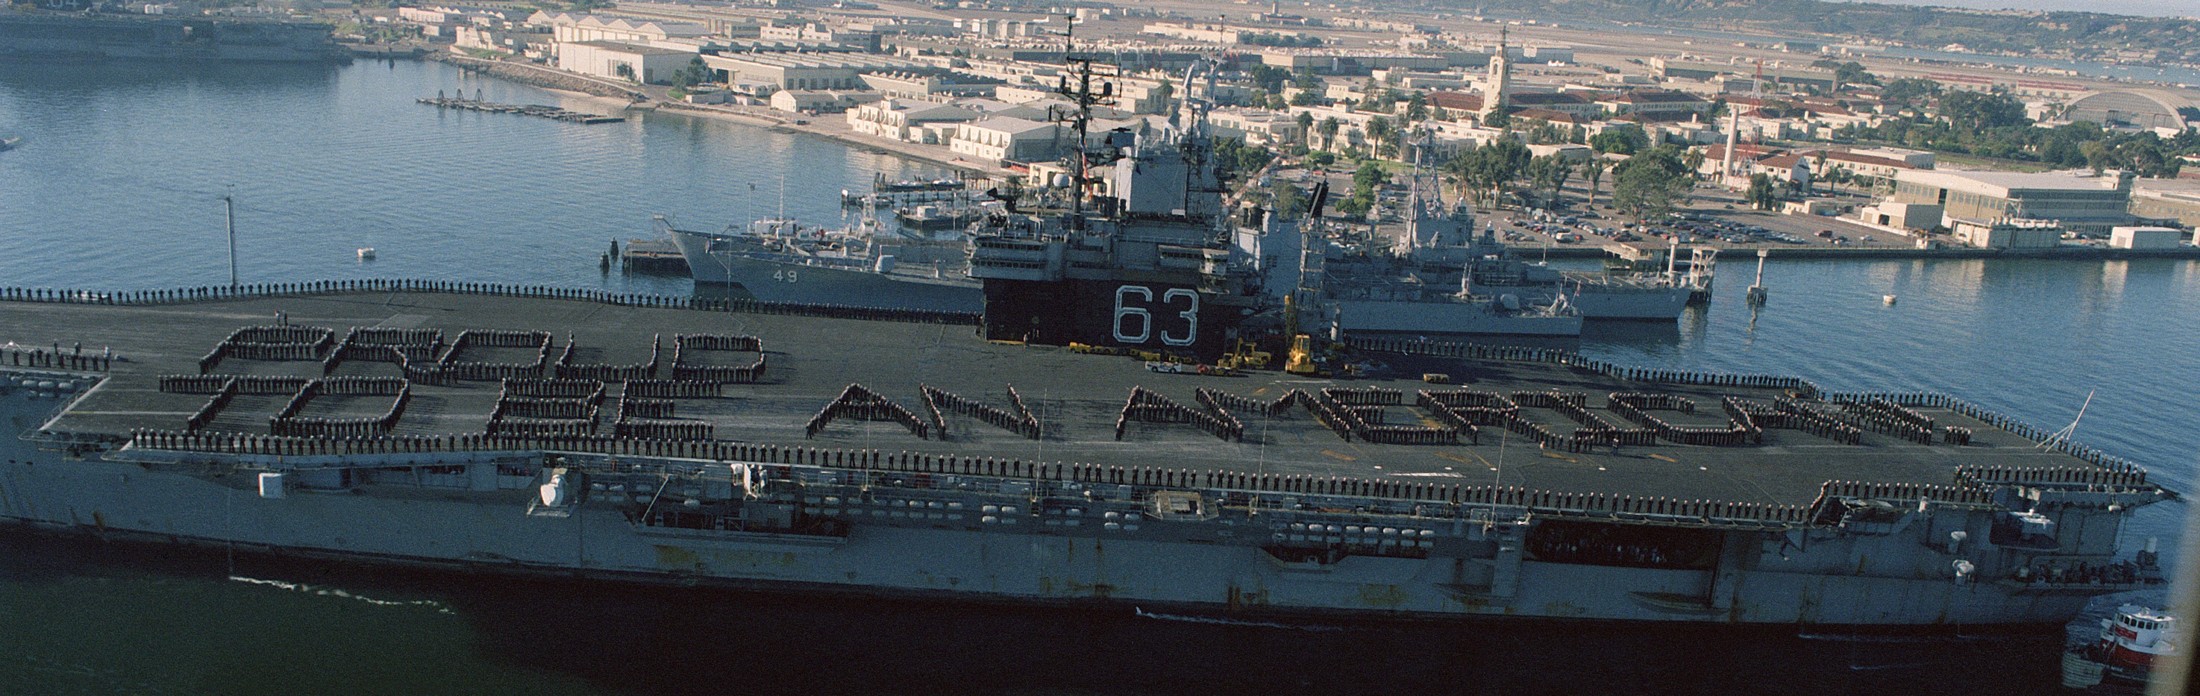 cv-63 uss kitty hawk aircraft carrier 363